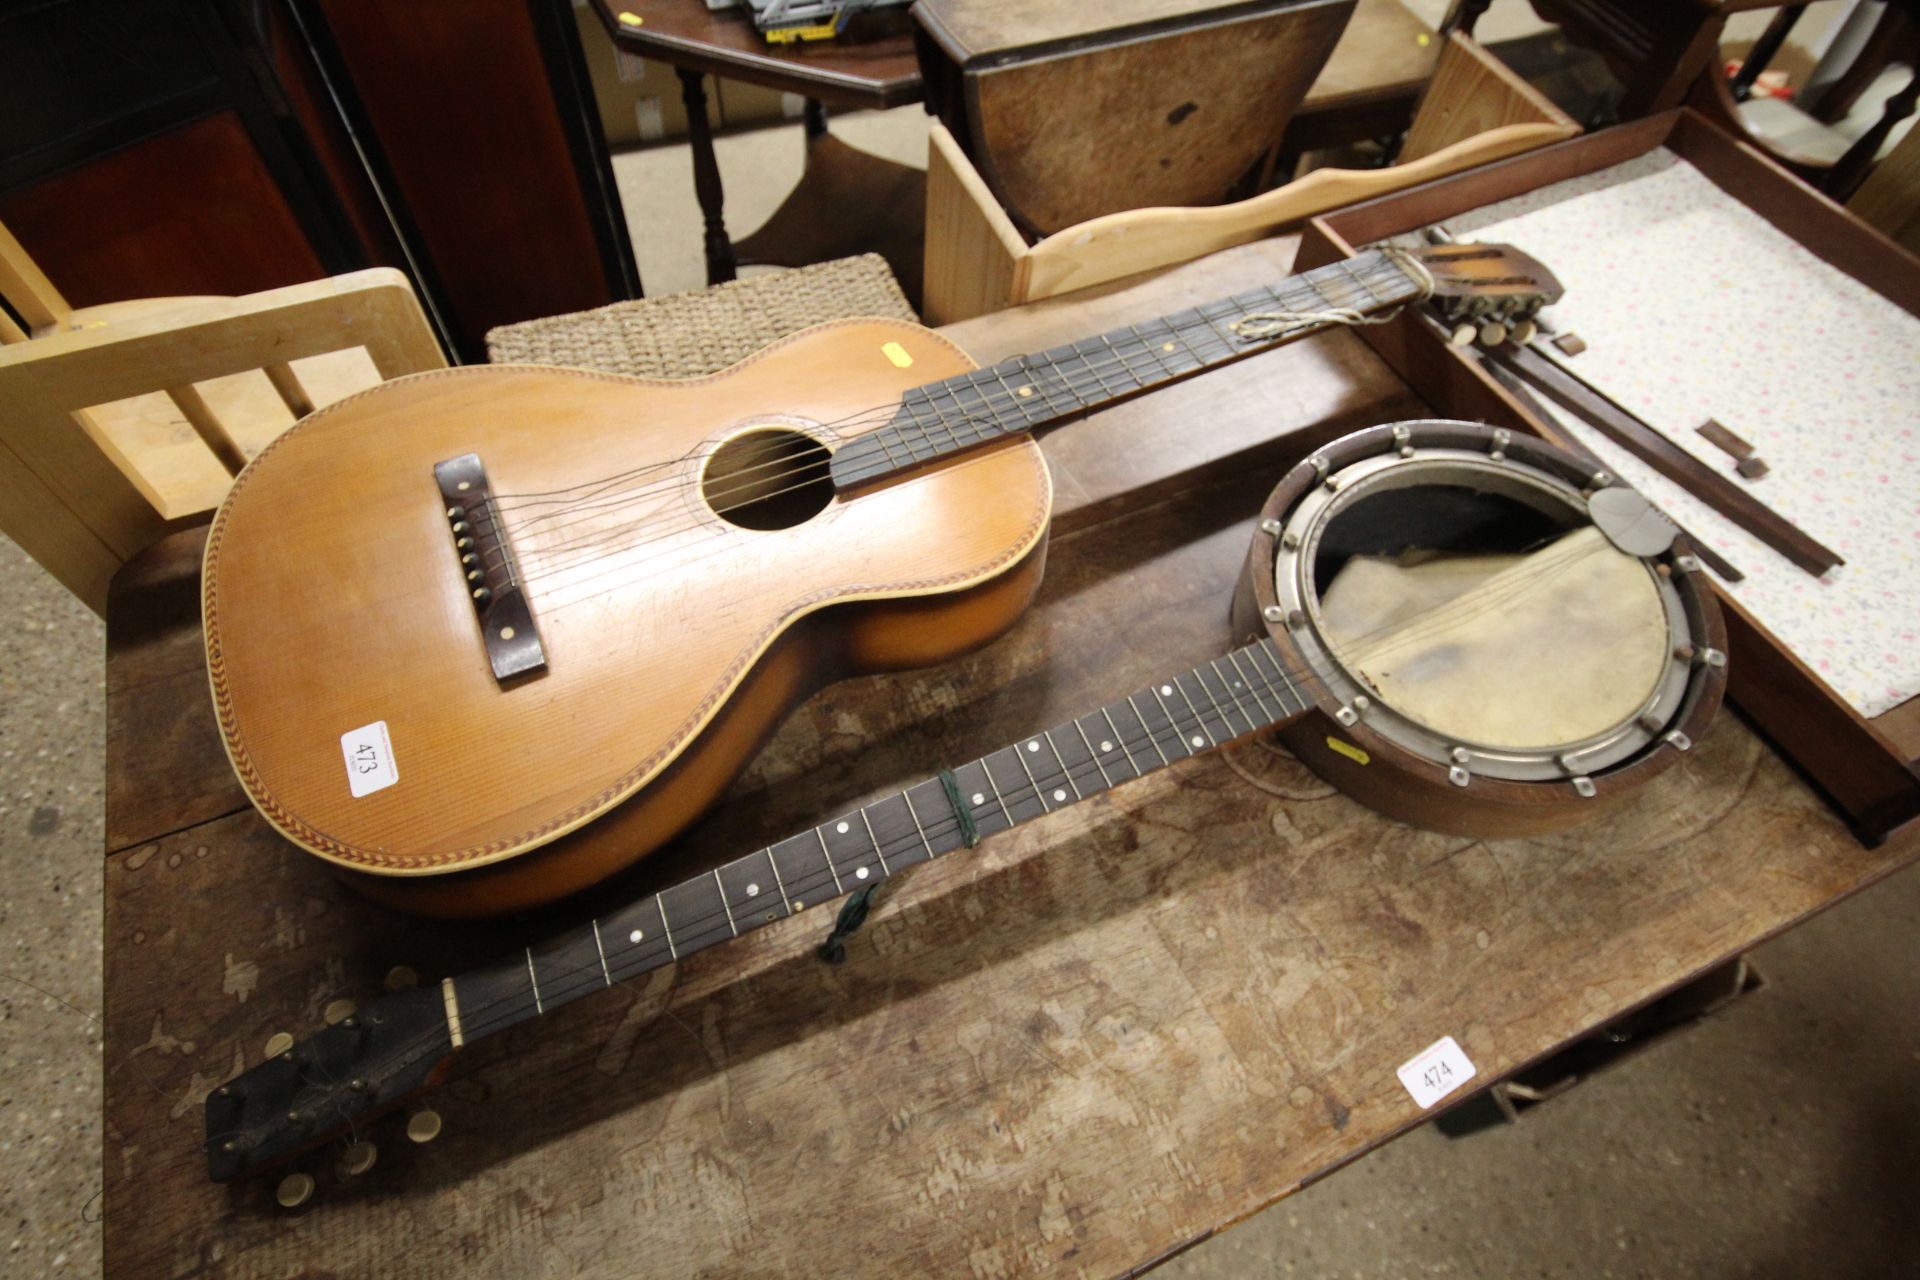 A vintage guitar and banjo AF